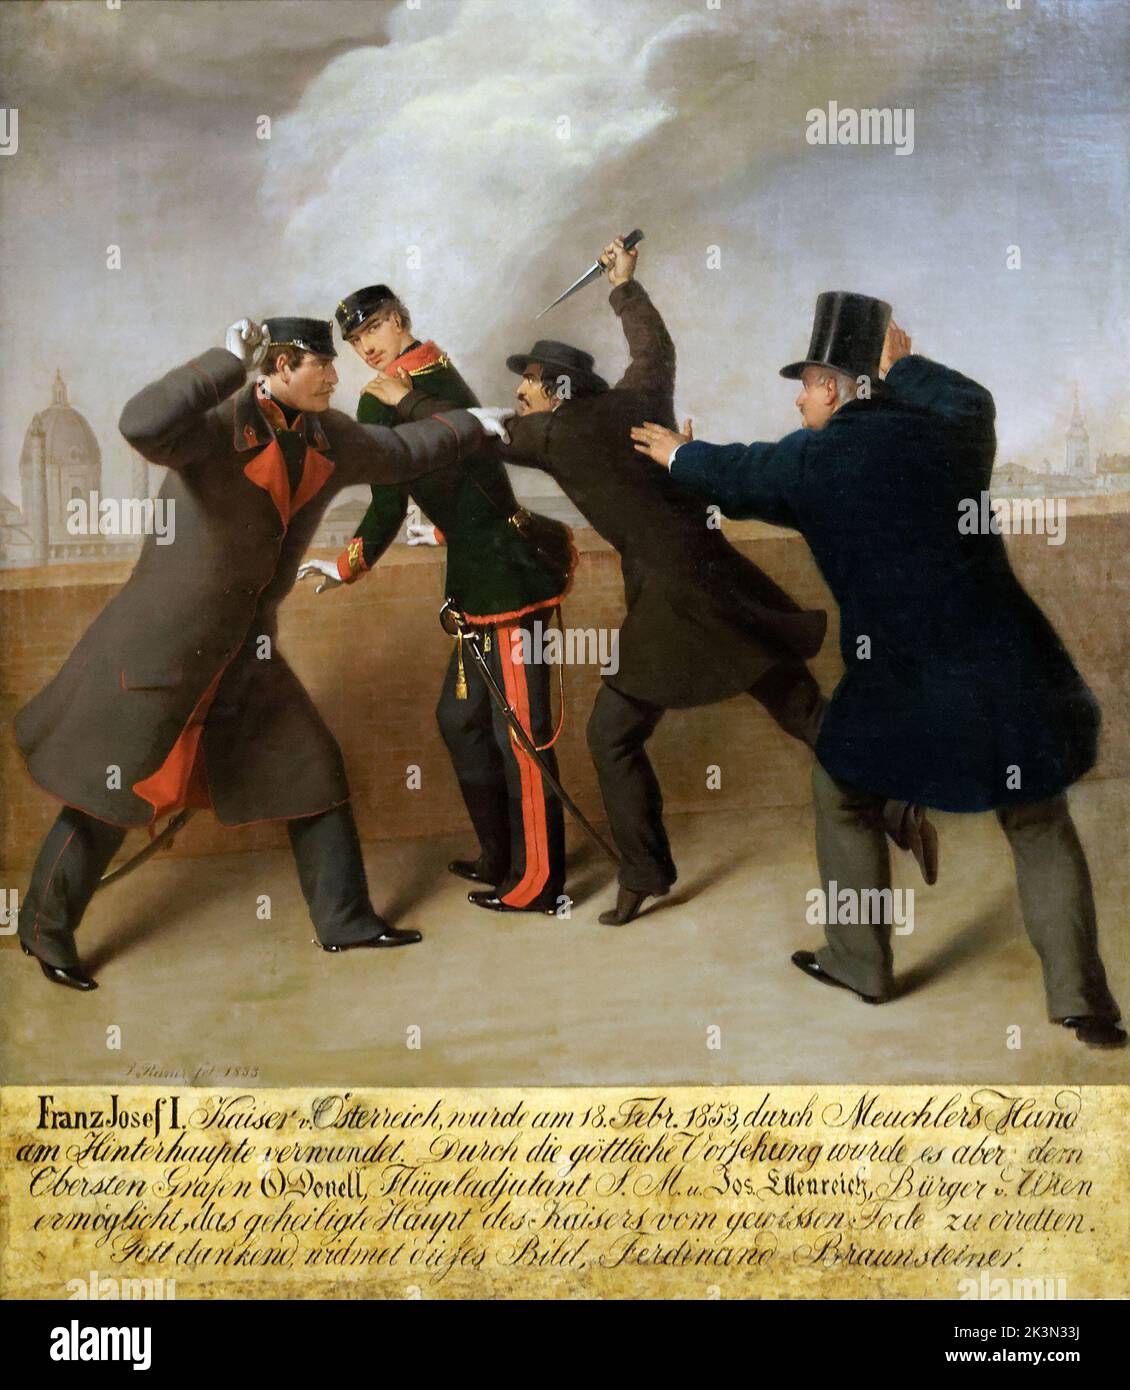 Tentativo di assassinio contro Franz Joseph l'imperatore nel 1853. Il 18 febbraio 1853, Franz Joseph sopravvisse ad un attentato del nazionalista ungherese János Libényi. Foto Stock